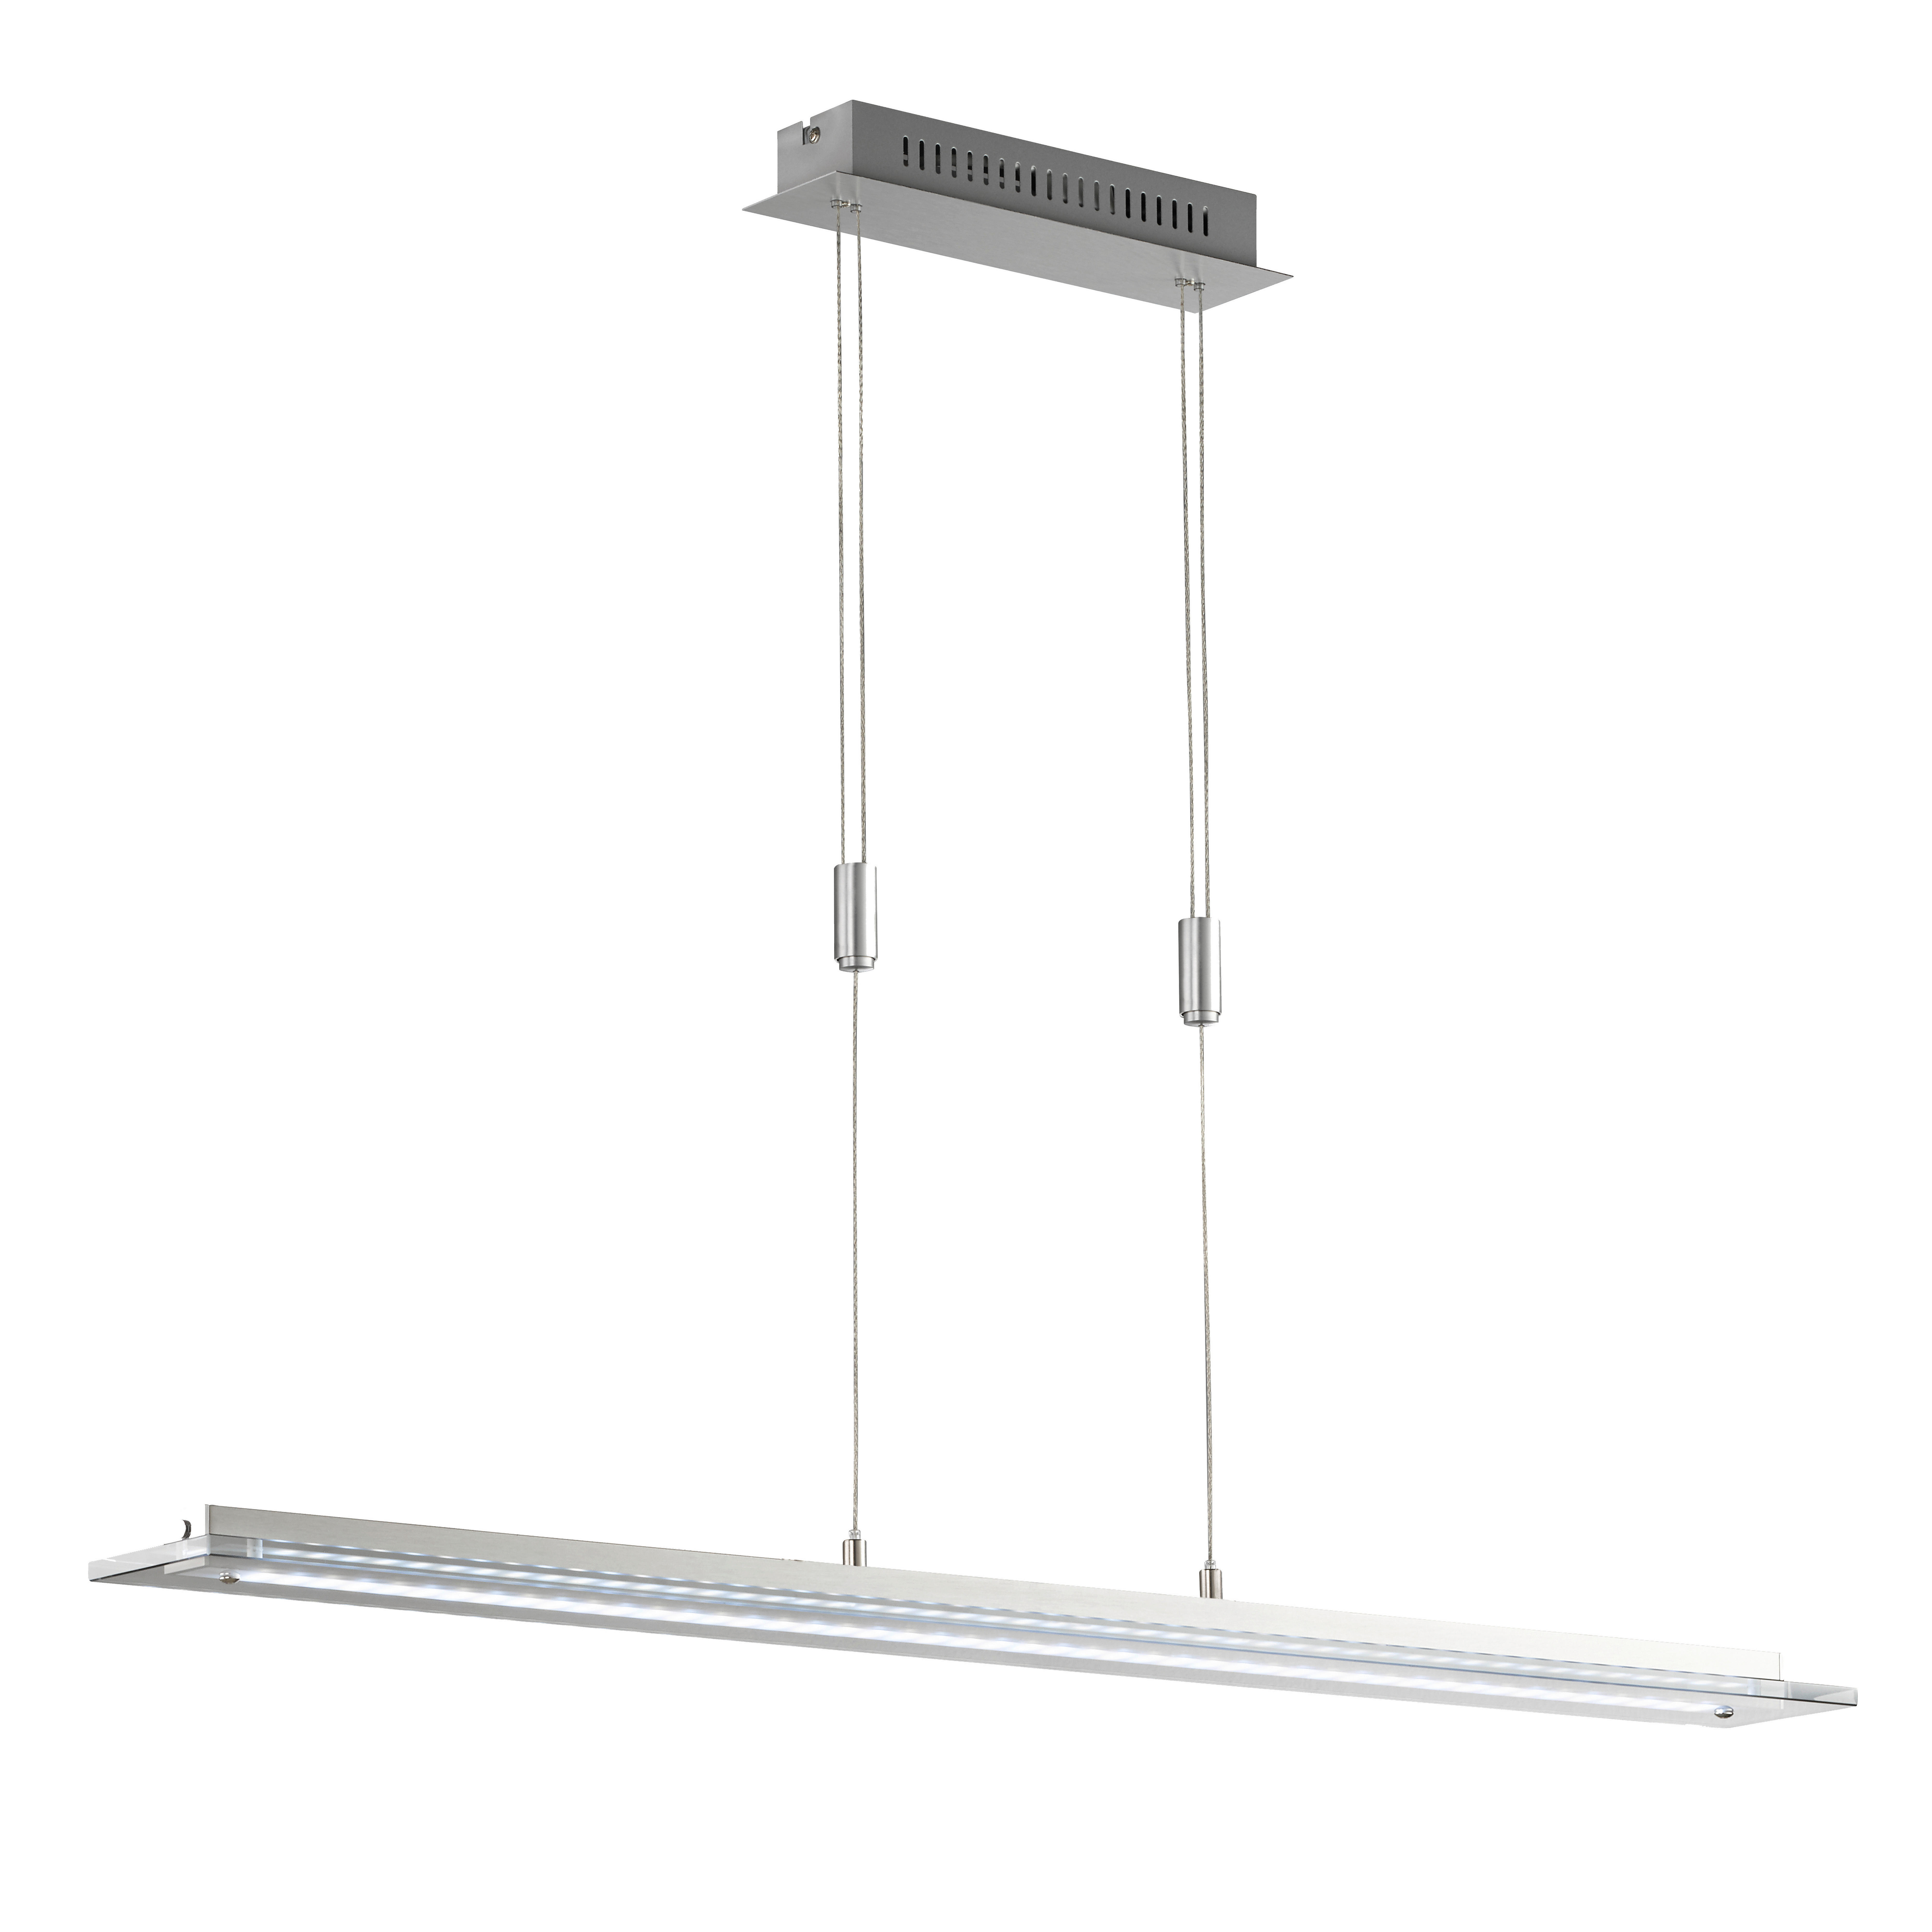 LED-HÄNGELEUCHTE 13,5/8/150 cm   - Alufarben, Design, Metall (13,5/8/150cm) - Fischer & Honsel